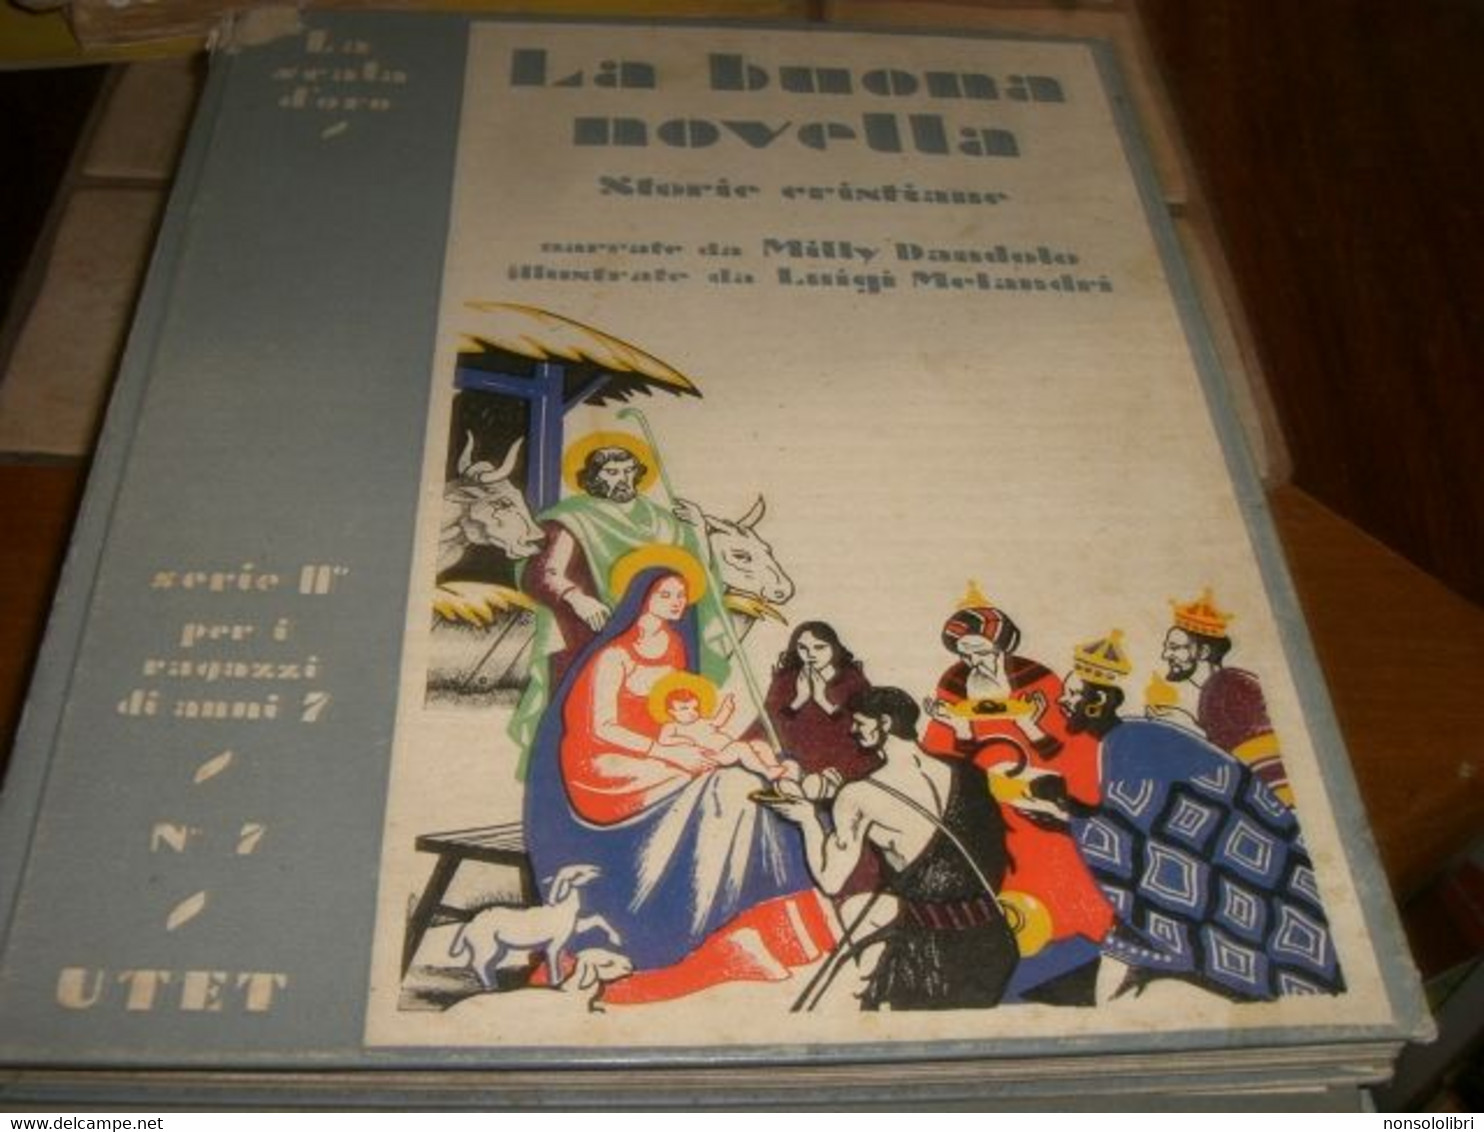 LIBRO "LA BUONA NOVELLA " SCALA D'ORO-SERIE II N.7 PER I RAGAZZI DI ANNI 7-ILLMELANDRI 1933 -COPERTINA RIGIDA - Tales & Short Stories